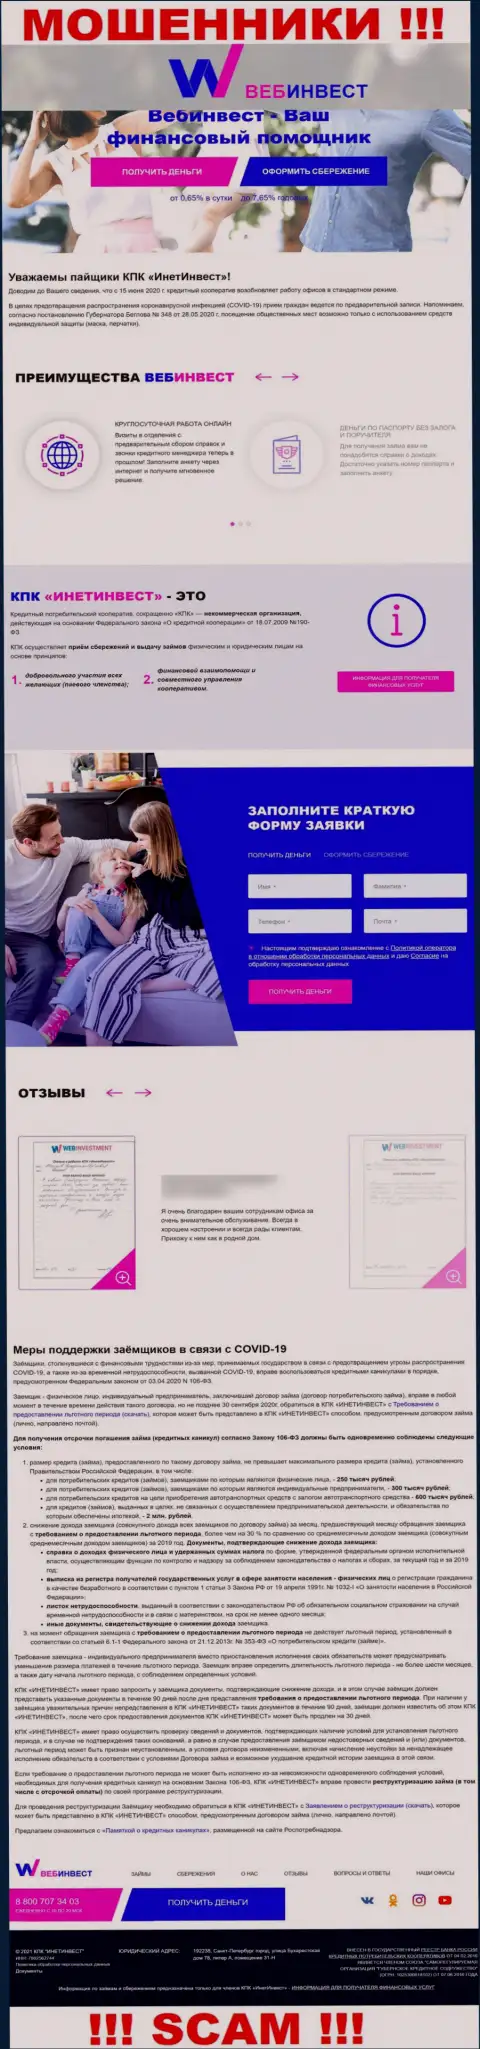 WebInvestment Ru - это официальный онлайн-сервис разводил КПК ИнетИнвест